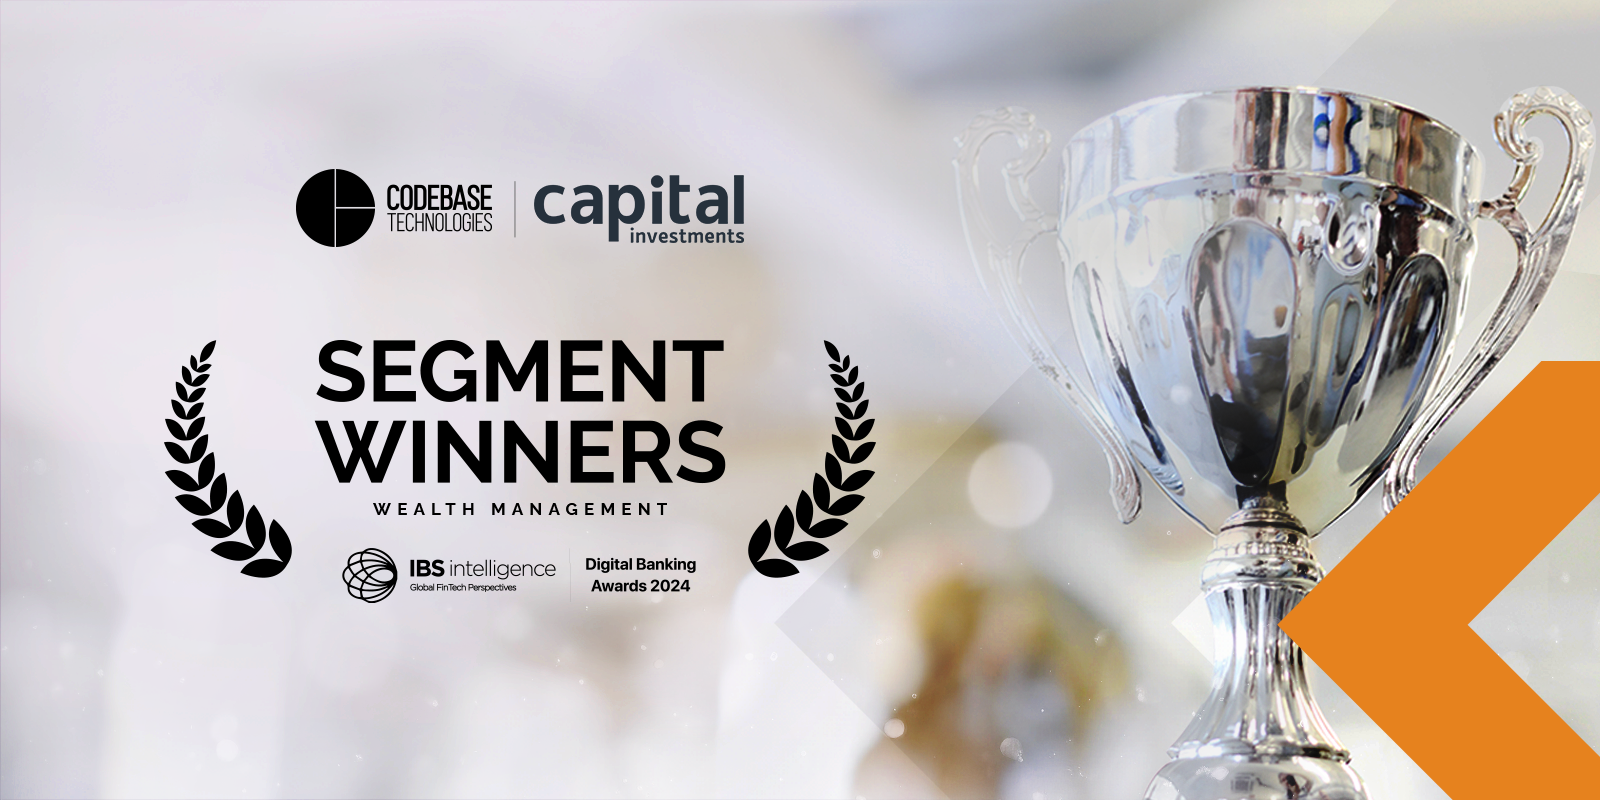 شركة كودبيس تكنولوجيز وكابيتال للاستثمارات تفوزان بجائزة إدارة الثروات في IBS Intelligence Digital Banking Awards لعام ٢٠٢٤